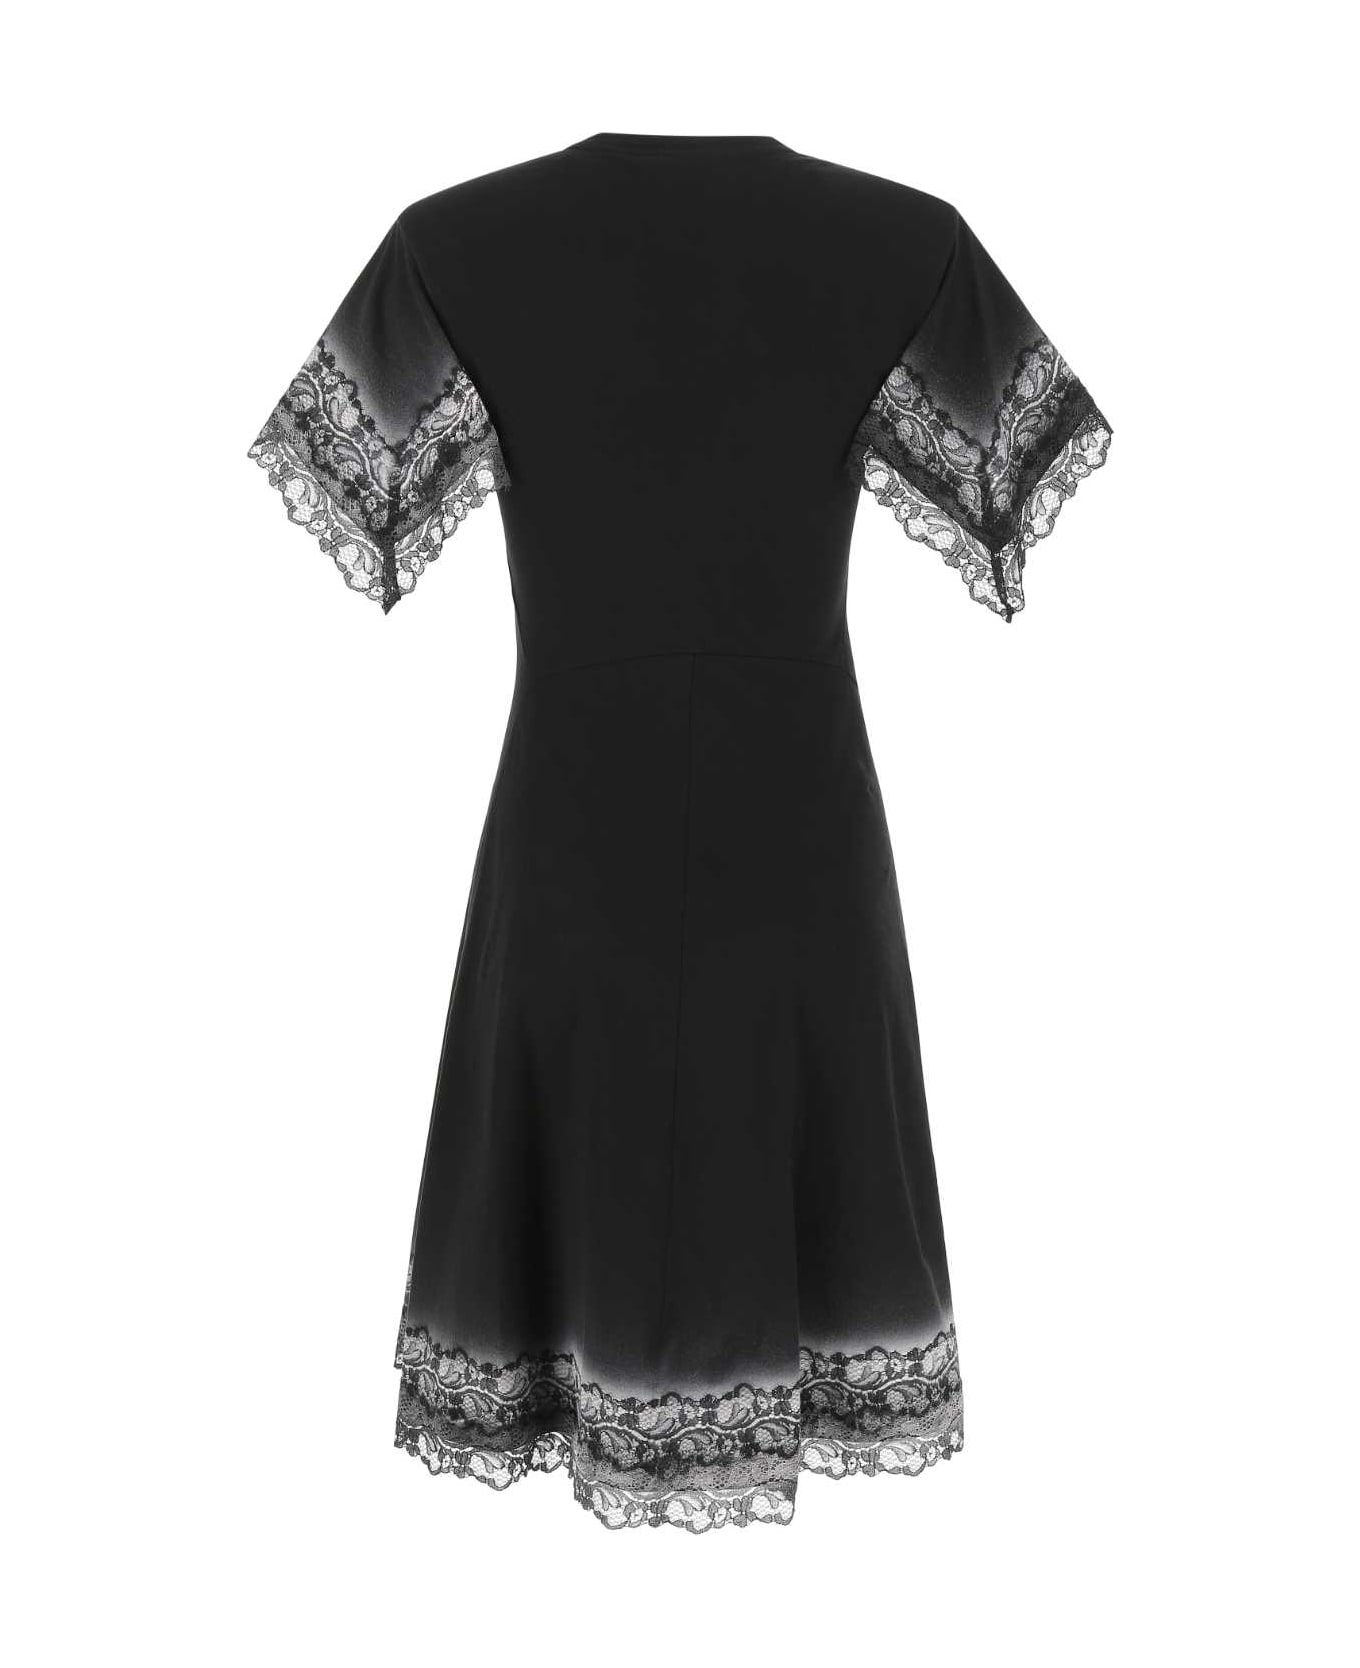 Koché Black Cotton Dress - 900